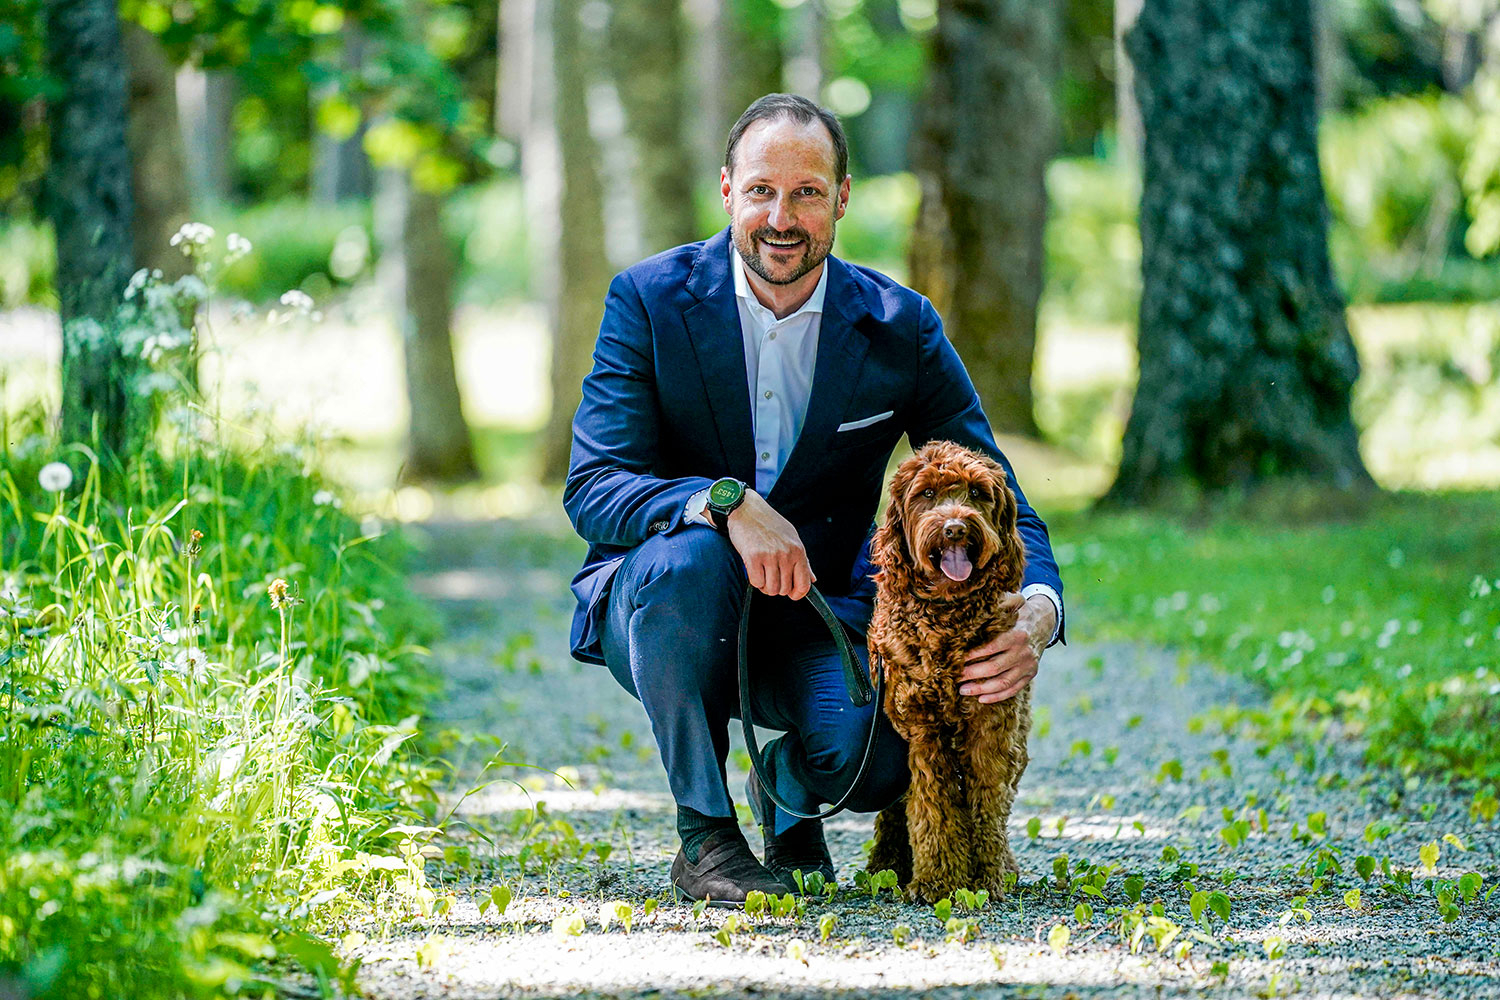 Kronprins Haakon ute på en luftetur med hunden Molly Fiskebolle på Skaugum, hvor kronprinsfamilien bor. Torsdag blir han 50-åring. 